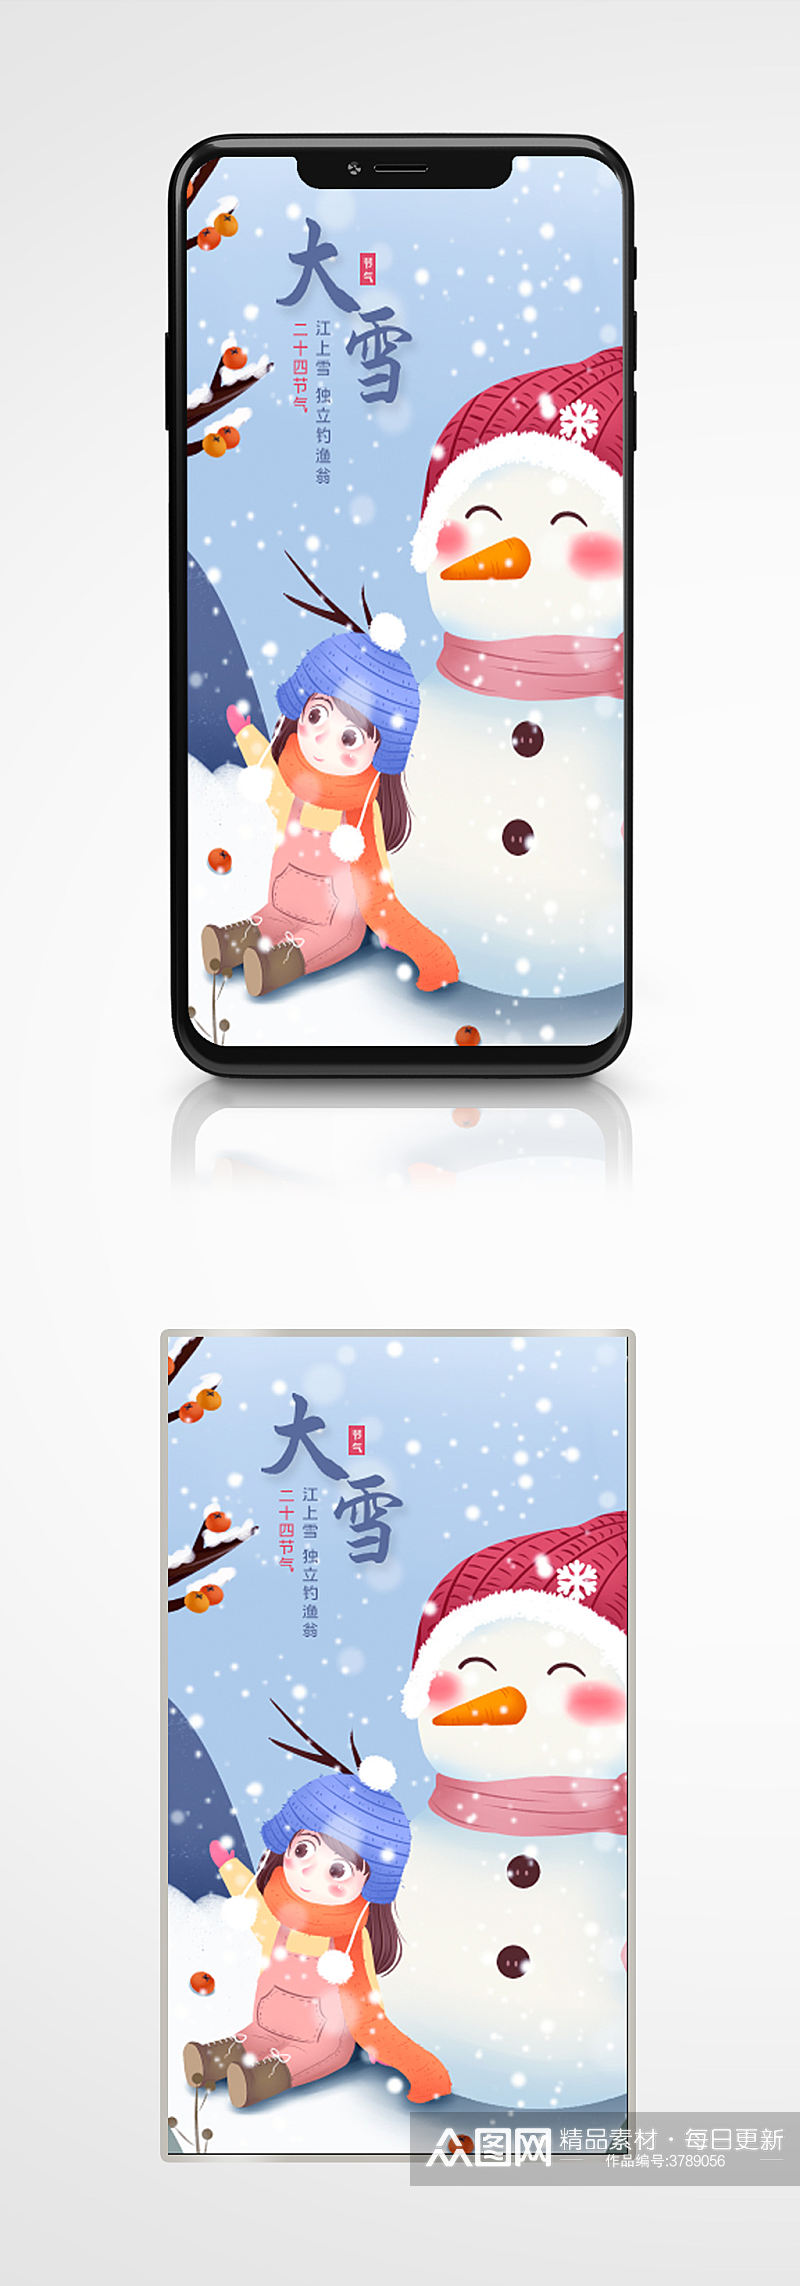 大雪插画风简约手机海报卡通冬至素材